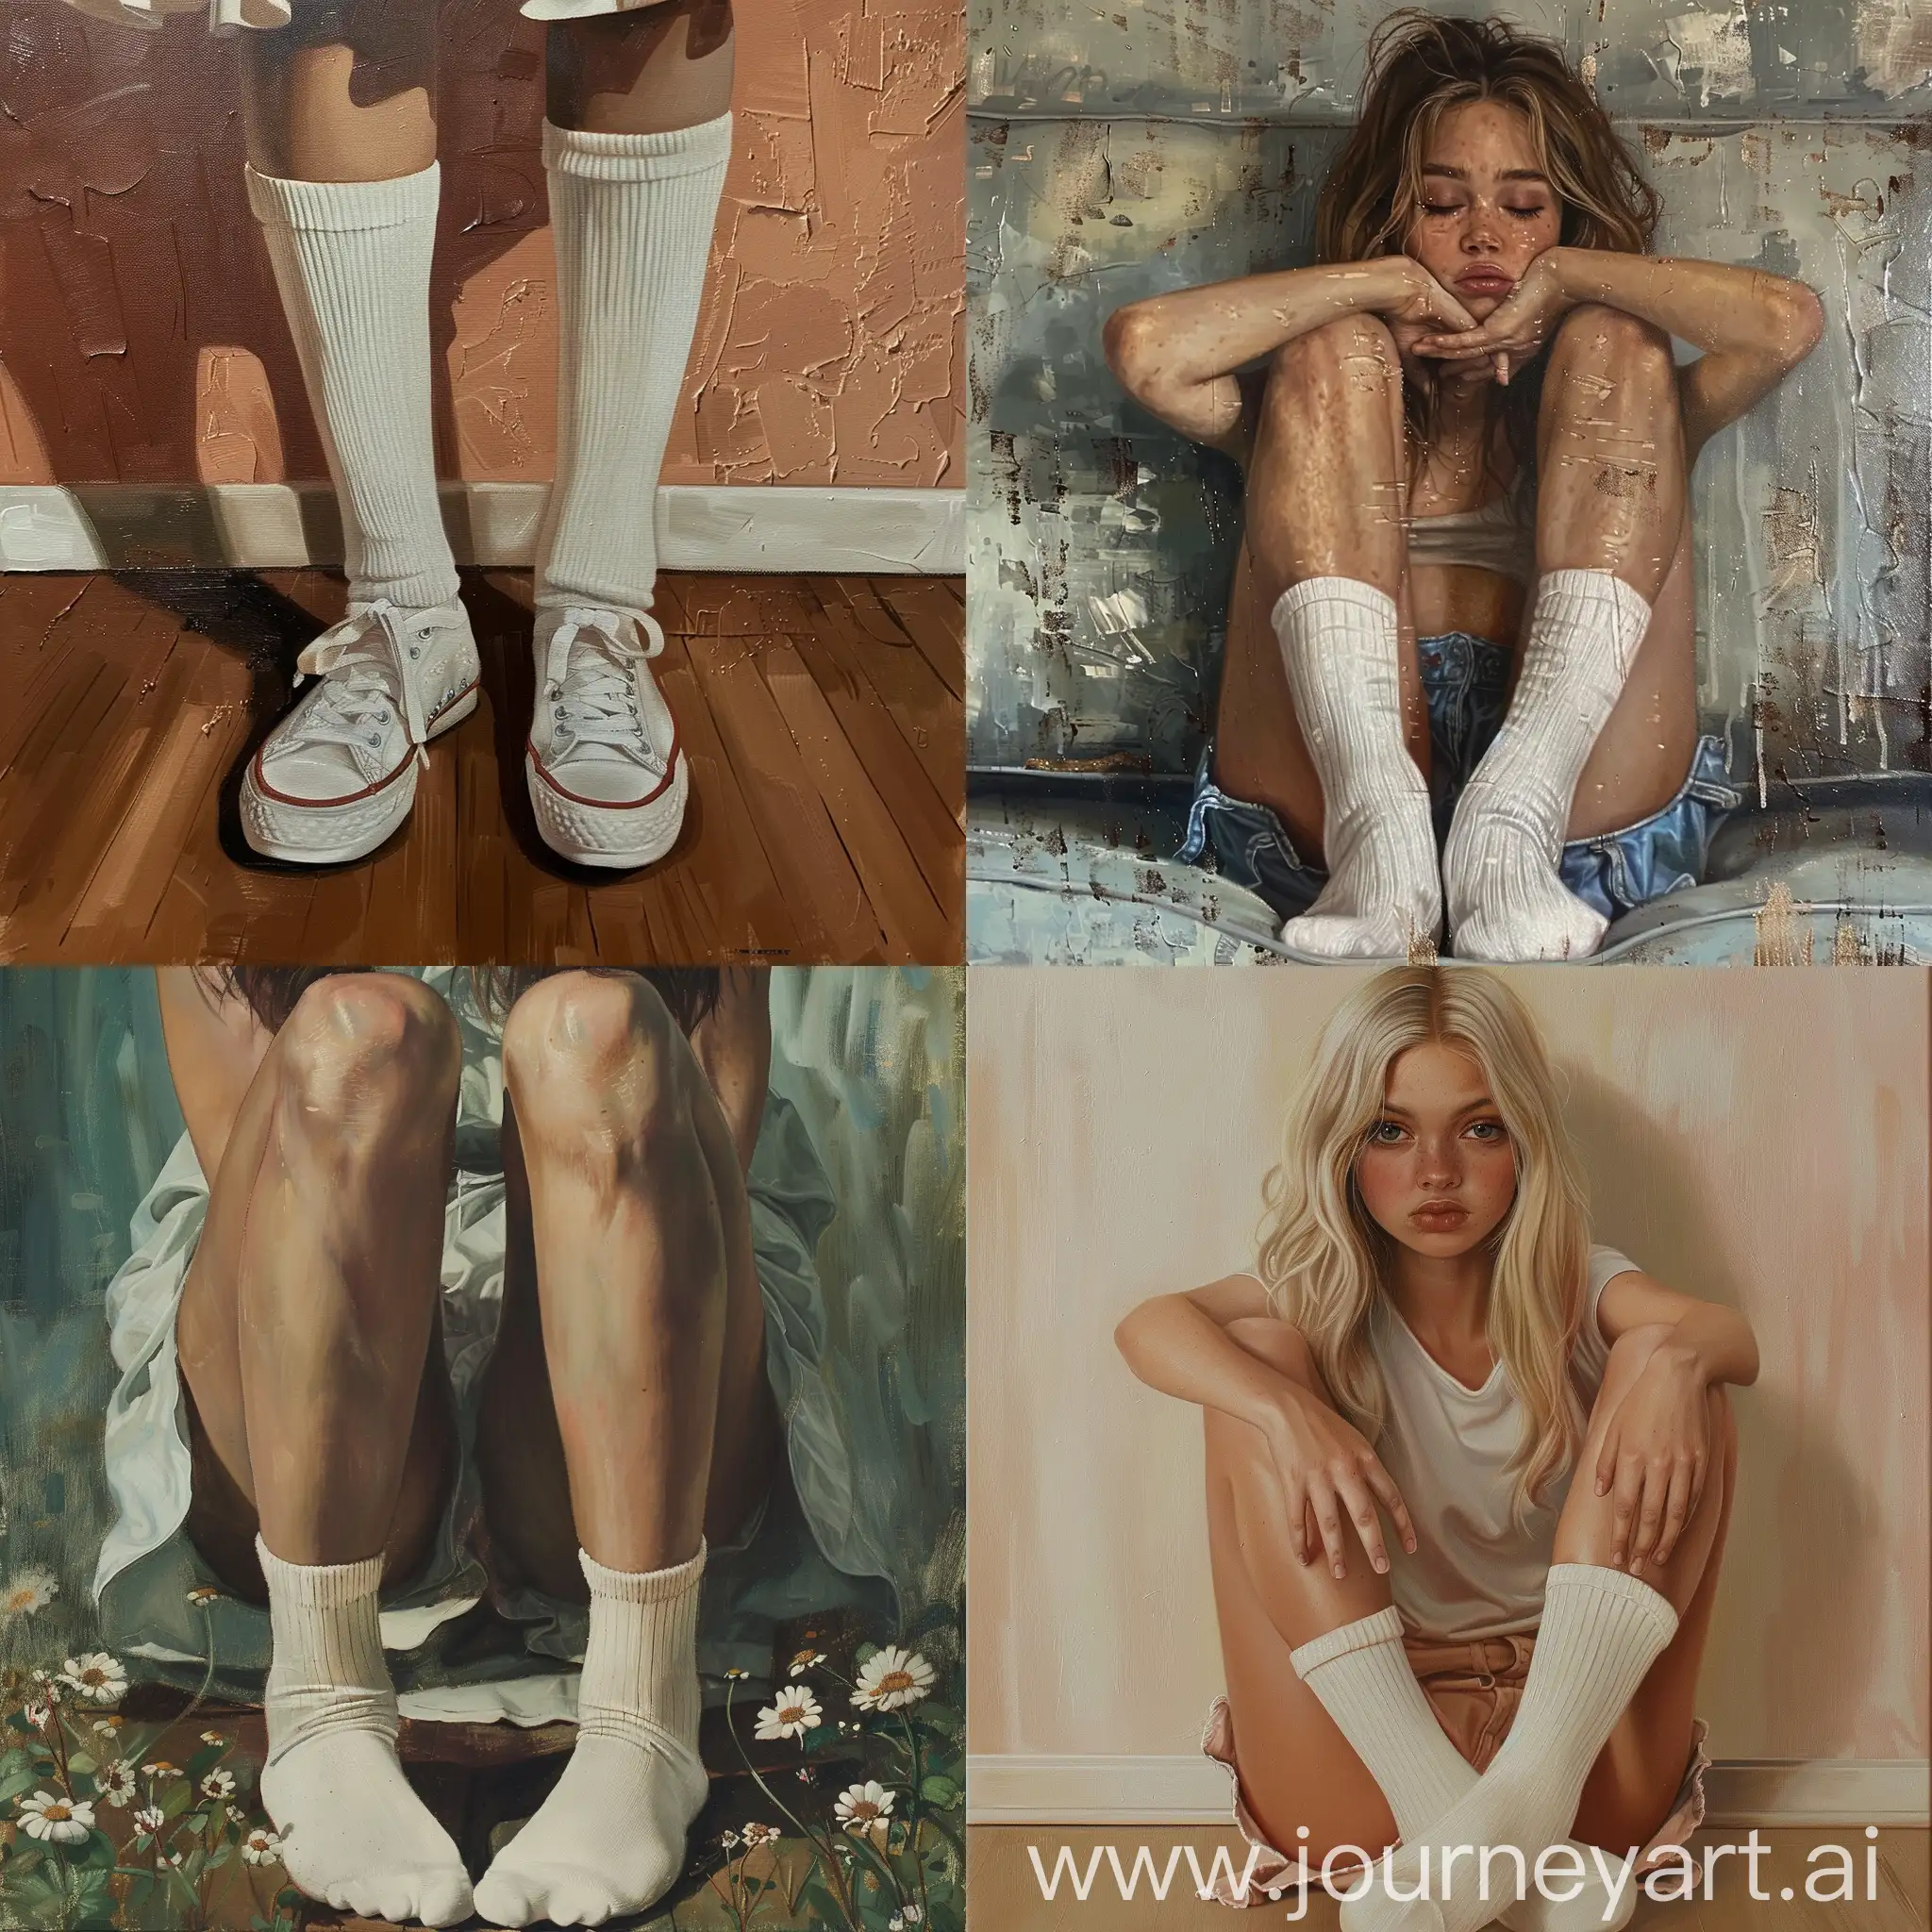 Girl-in-White-Socks-Innocence-and-Charm-Captured-in-Digital-Art